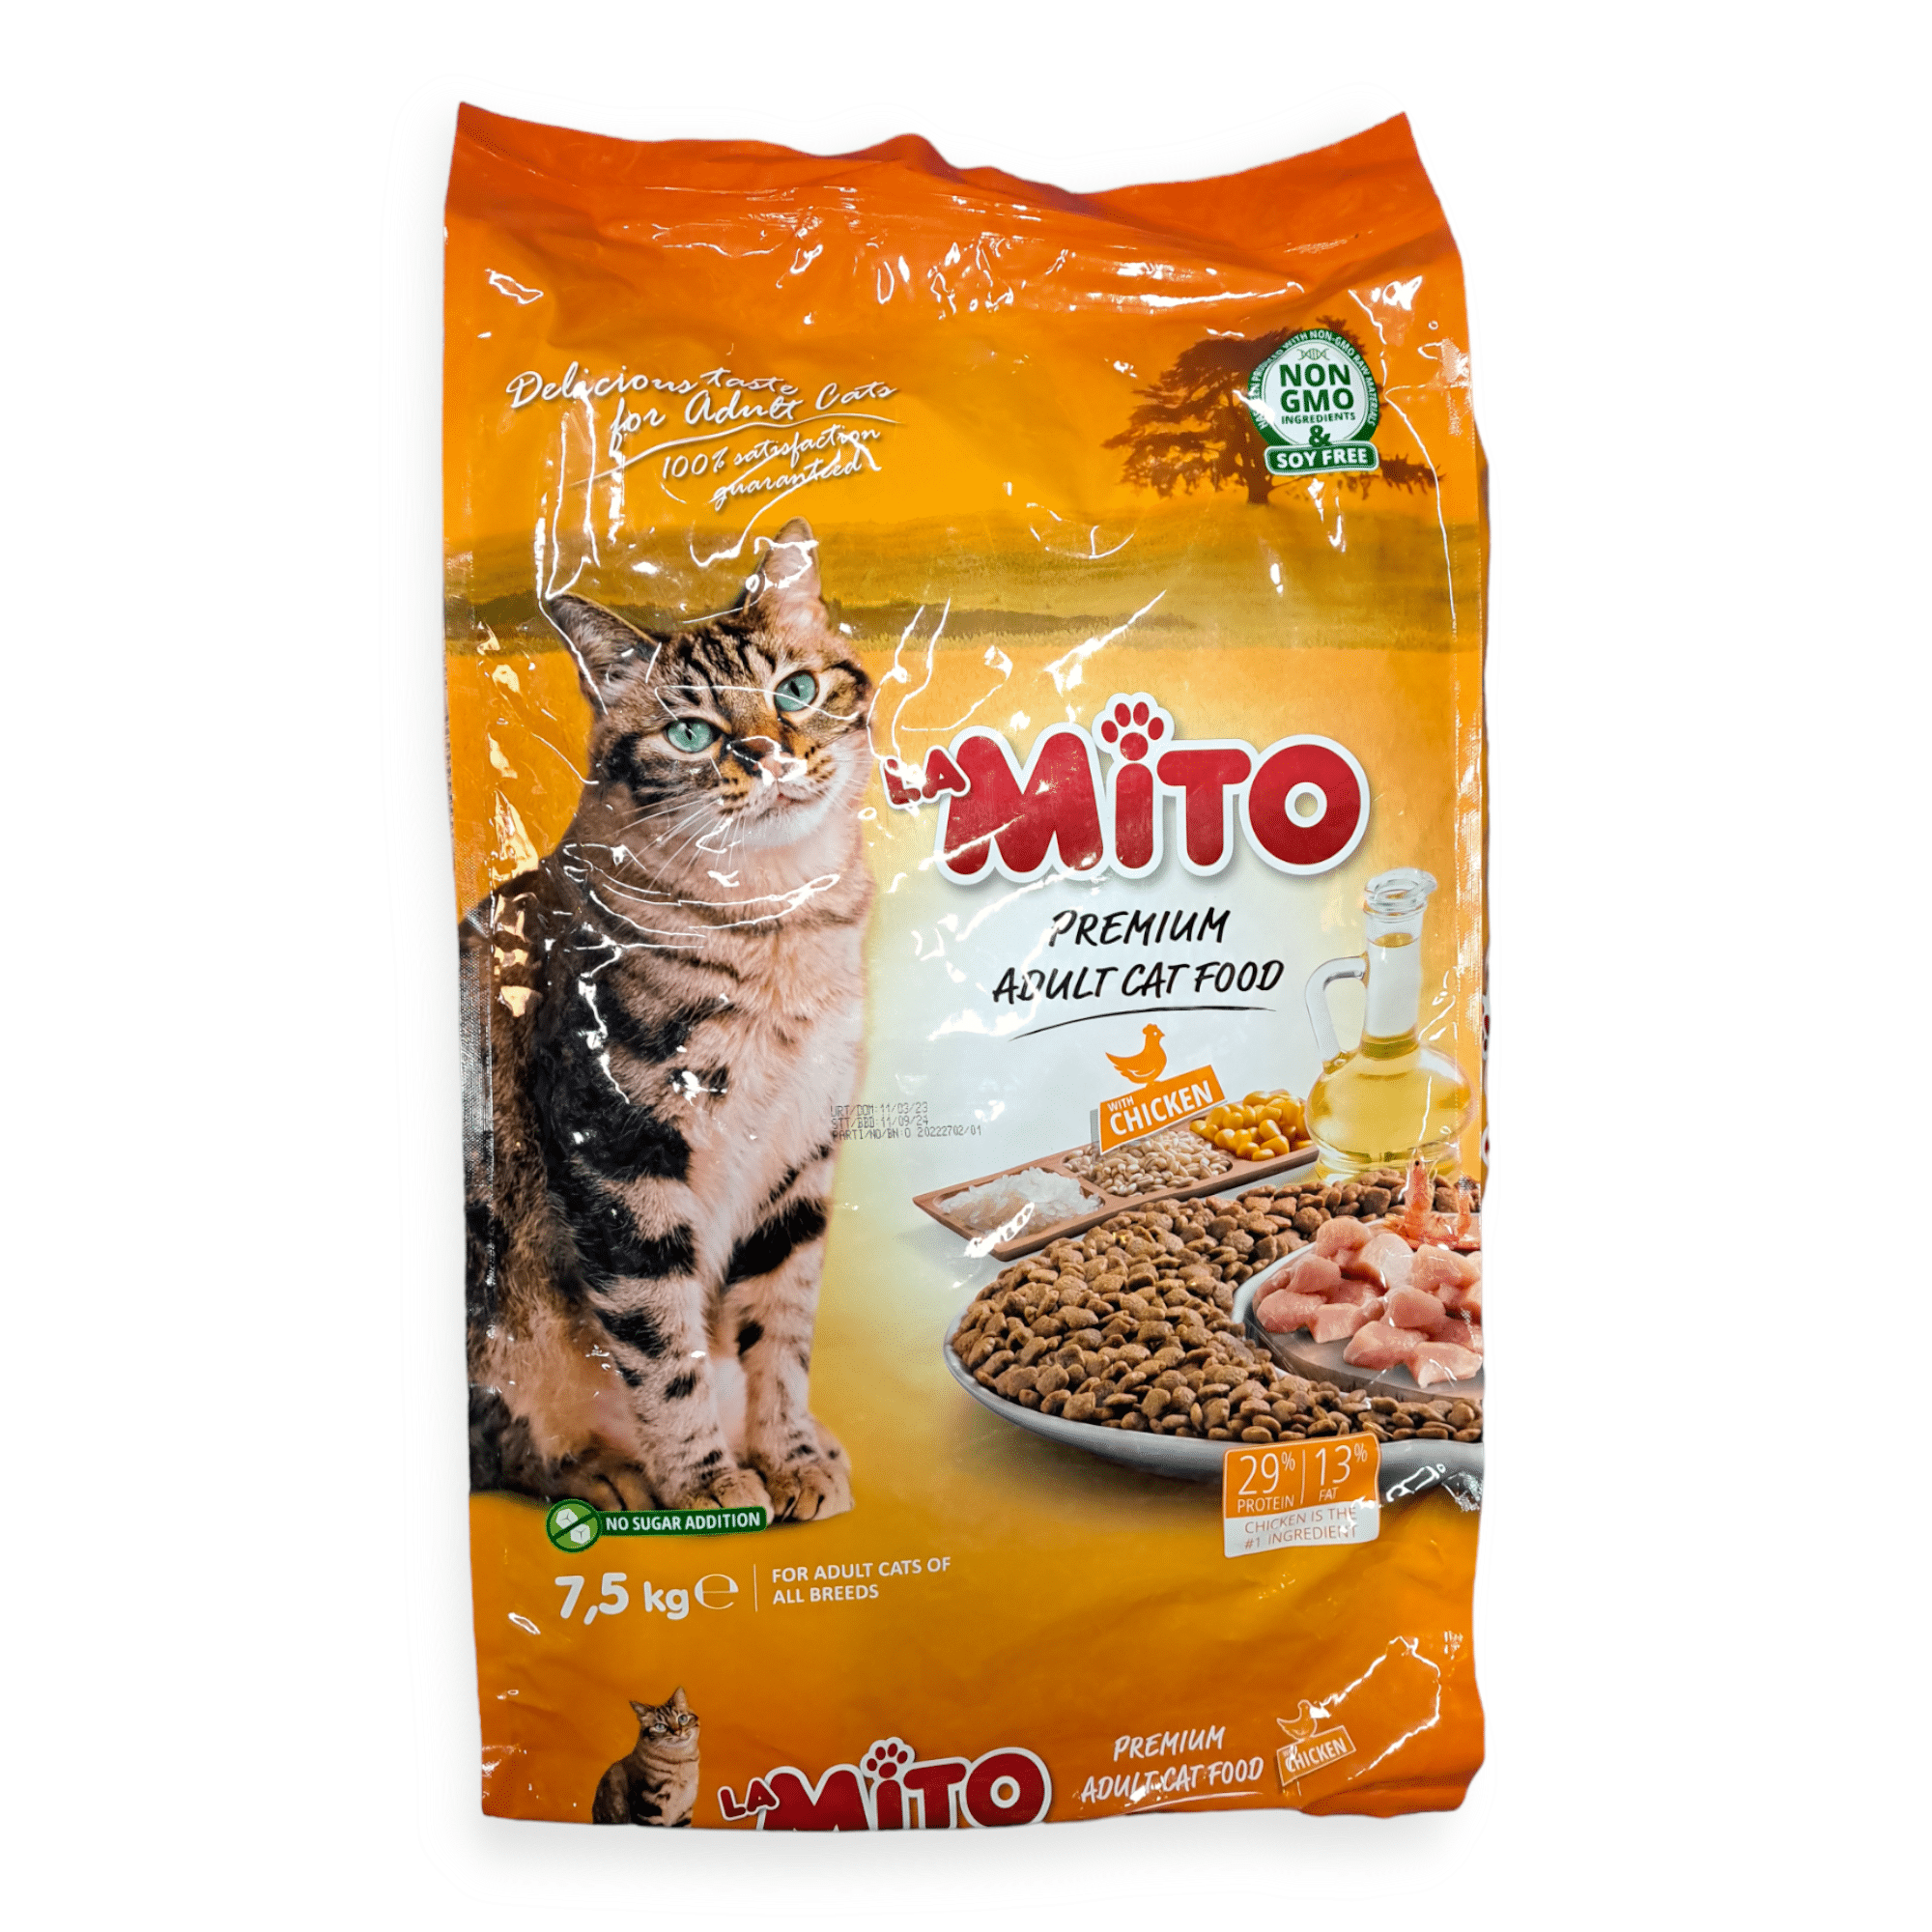 MITO מיטו, תרנגולת משובחת, 7.5 קילוגרם לחתולים